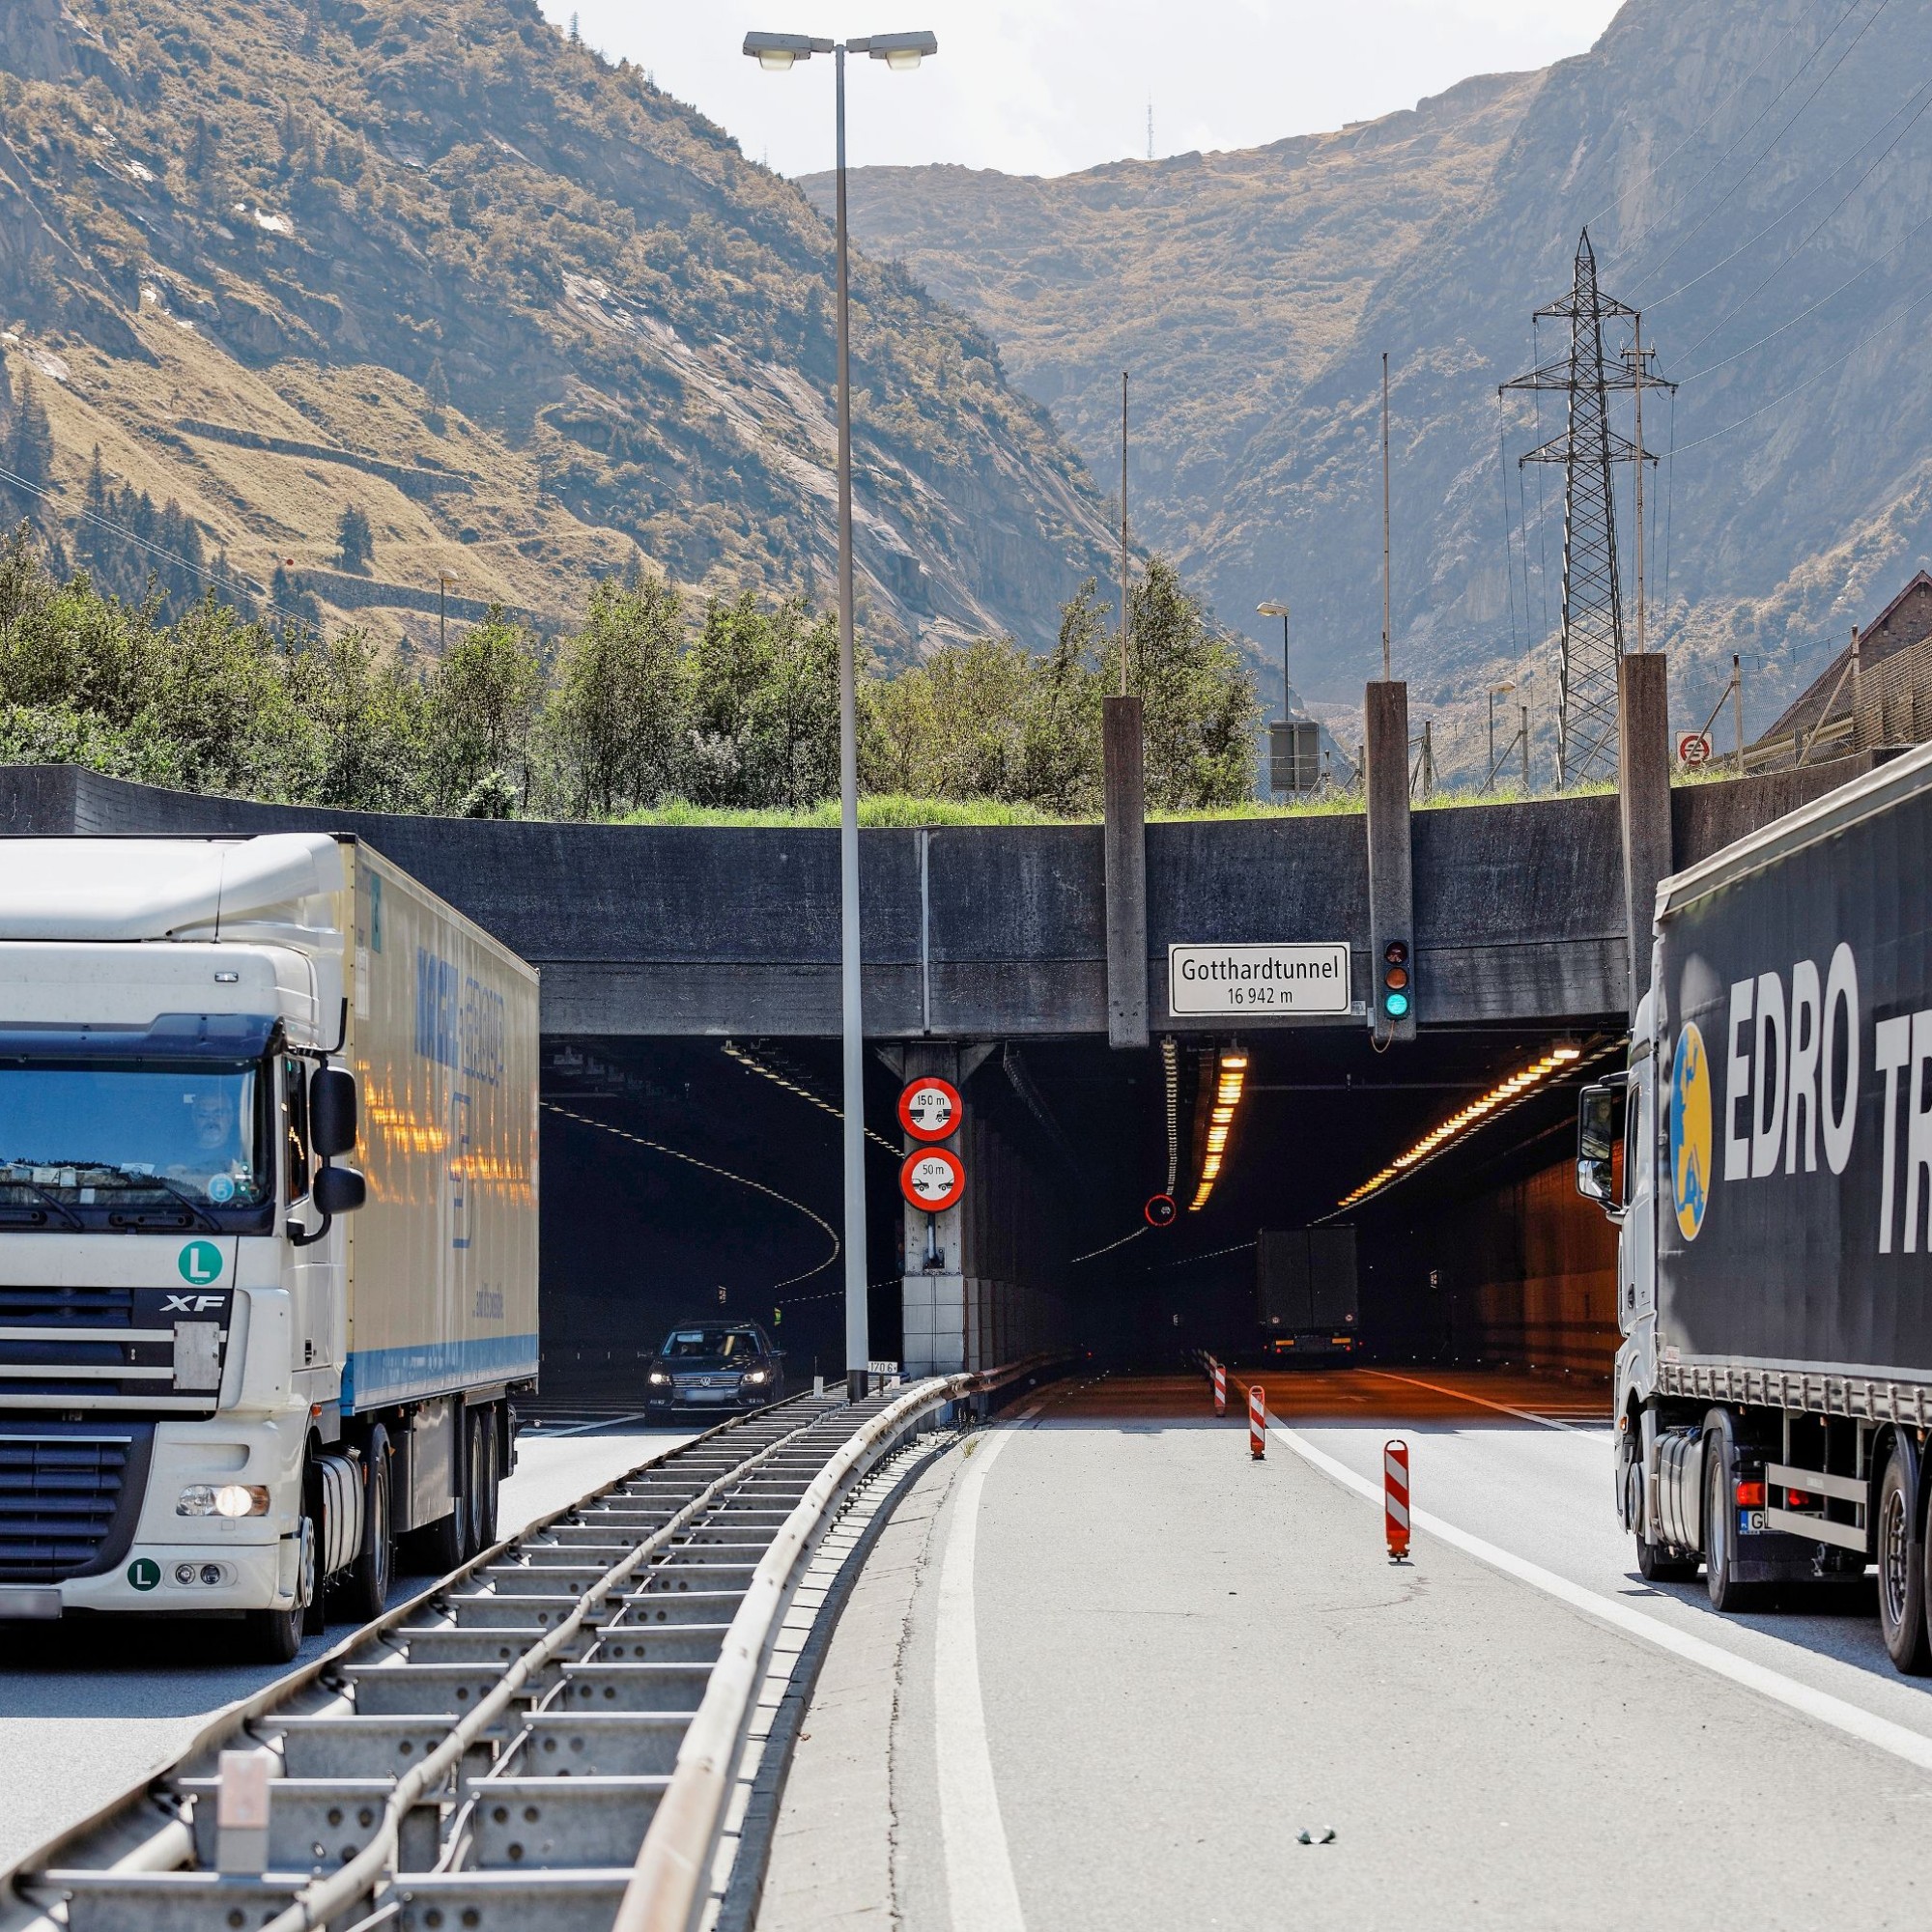 2021 sollen die Hauptarbeiten für den Bau des zweiten Strassentunnels am Gotthard starten. Der Bund konnte das Projekt in nur wenigen Jahren voranbringen.